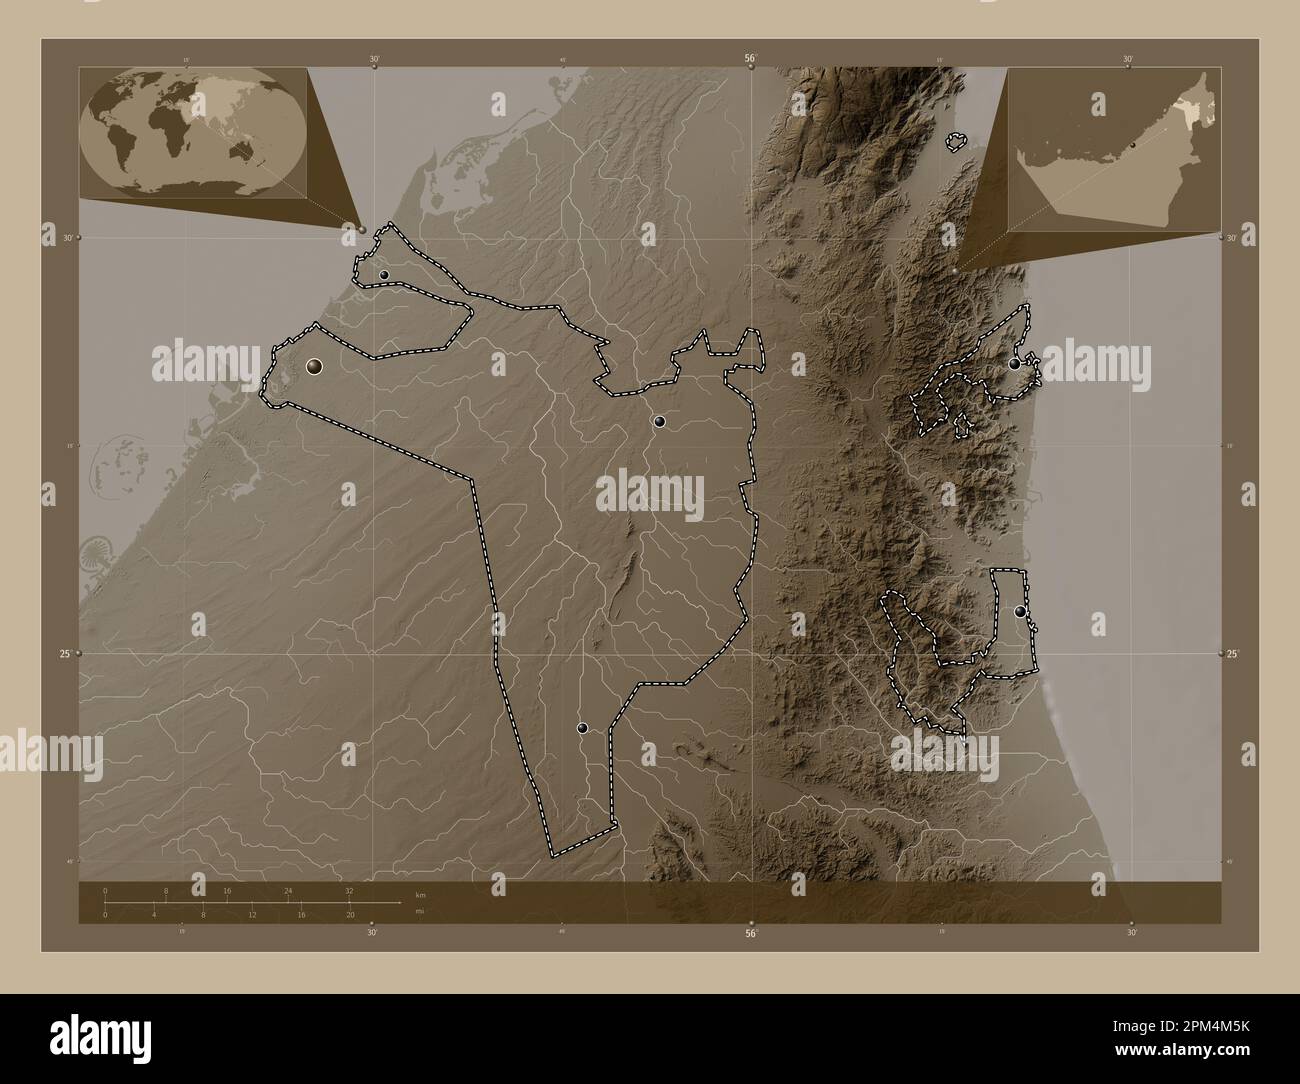 Sharjah, Emirat der Vereinigten Arabischen Emirate. Höhenplan in Sepia-Tönen mit Seen und Flüssen. Standorte der wichtigsten Städte der Region. Ecke Stockfoto